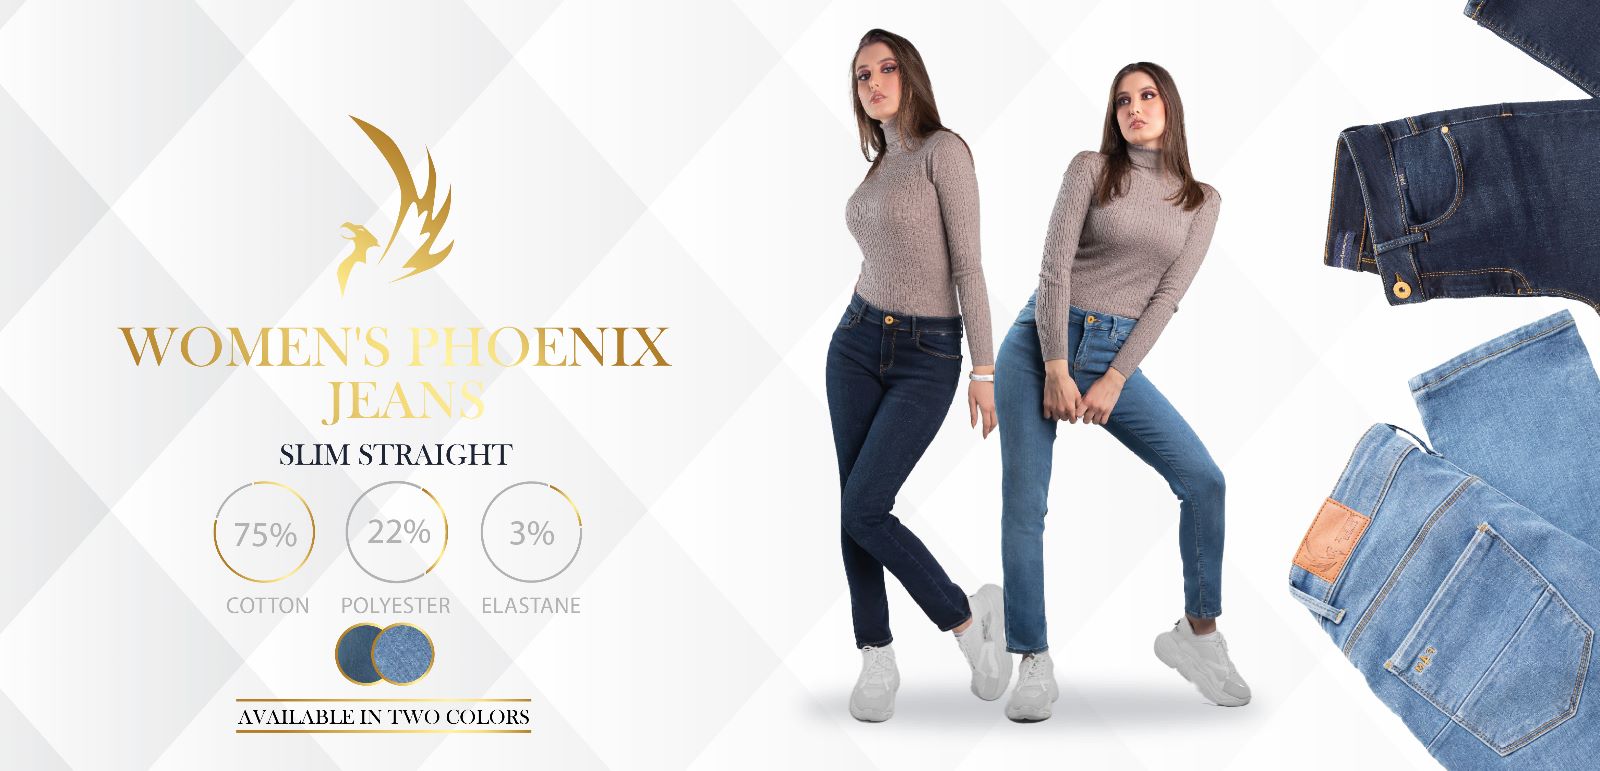 Womens Phoenix jeans